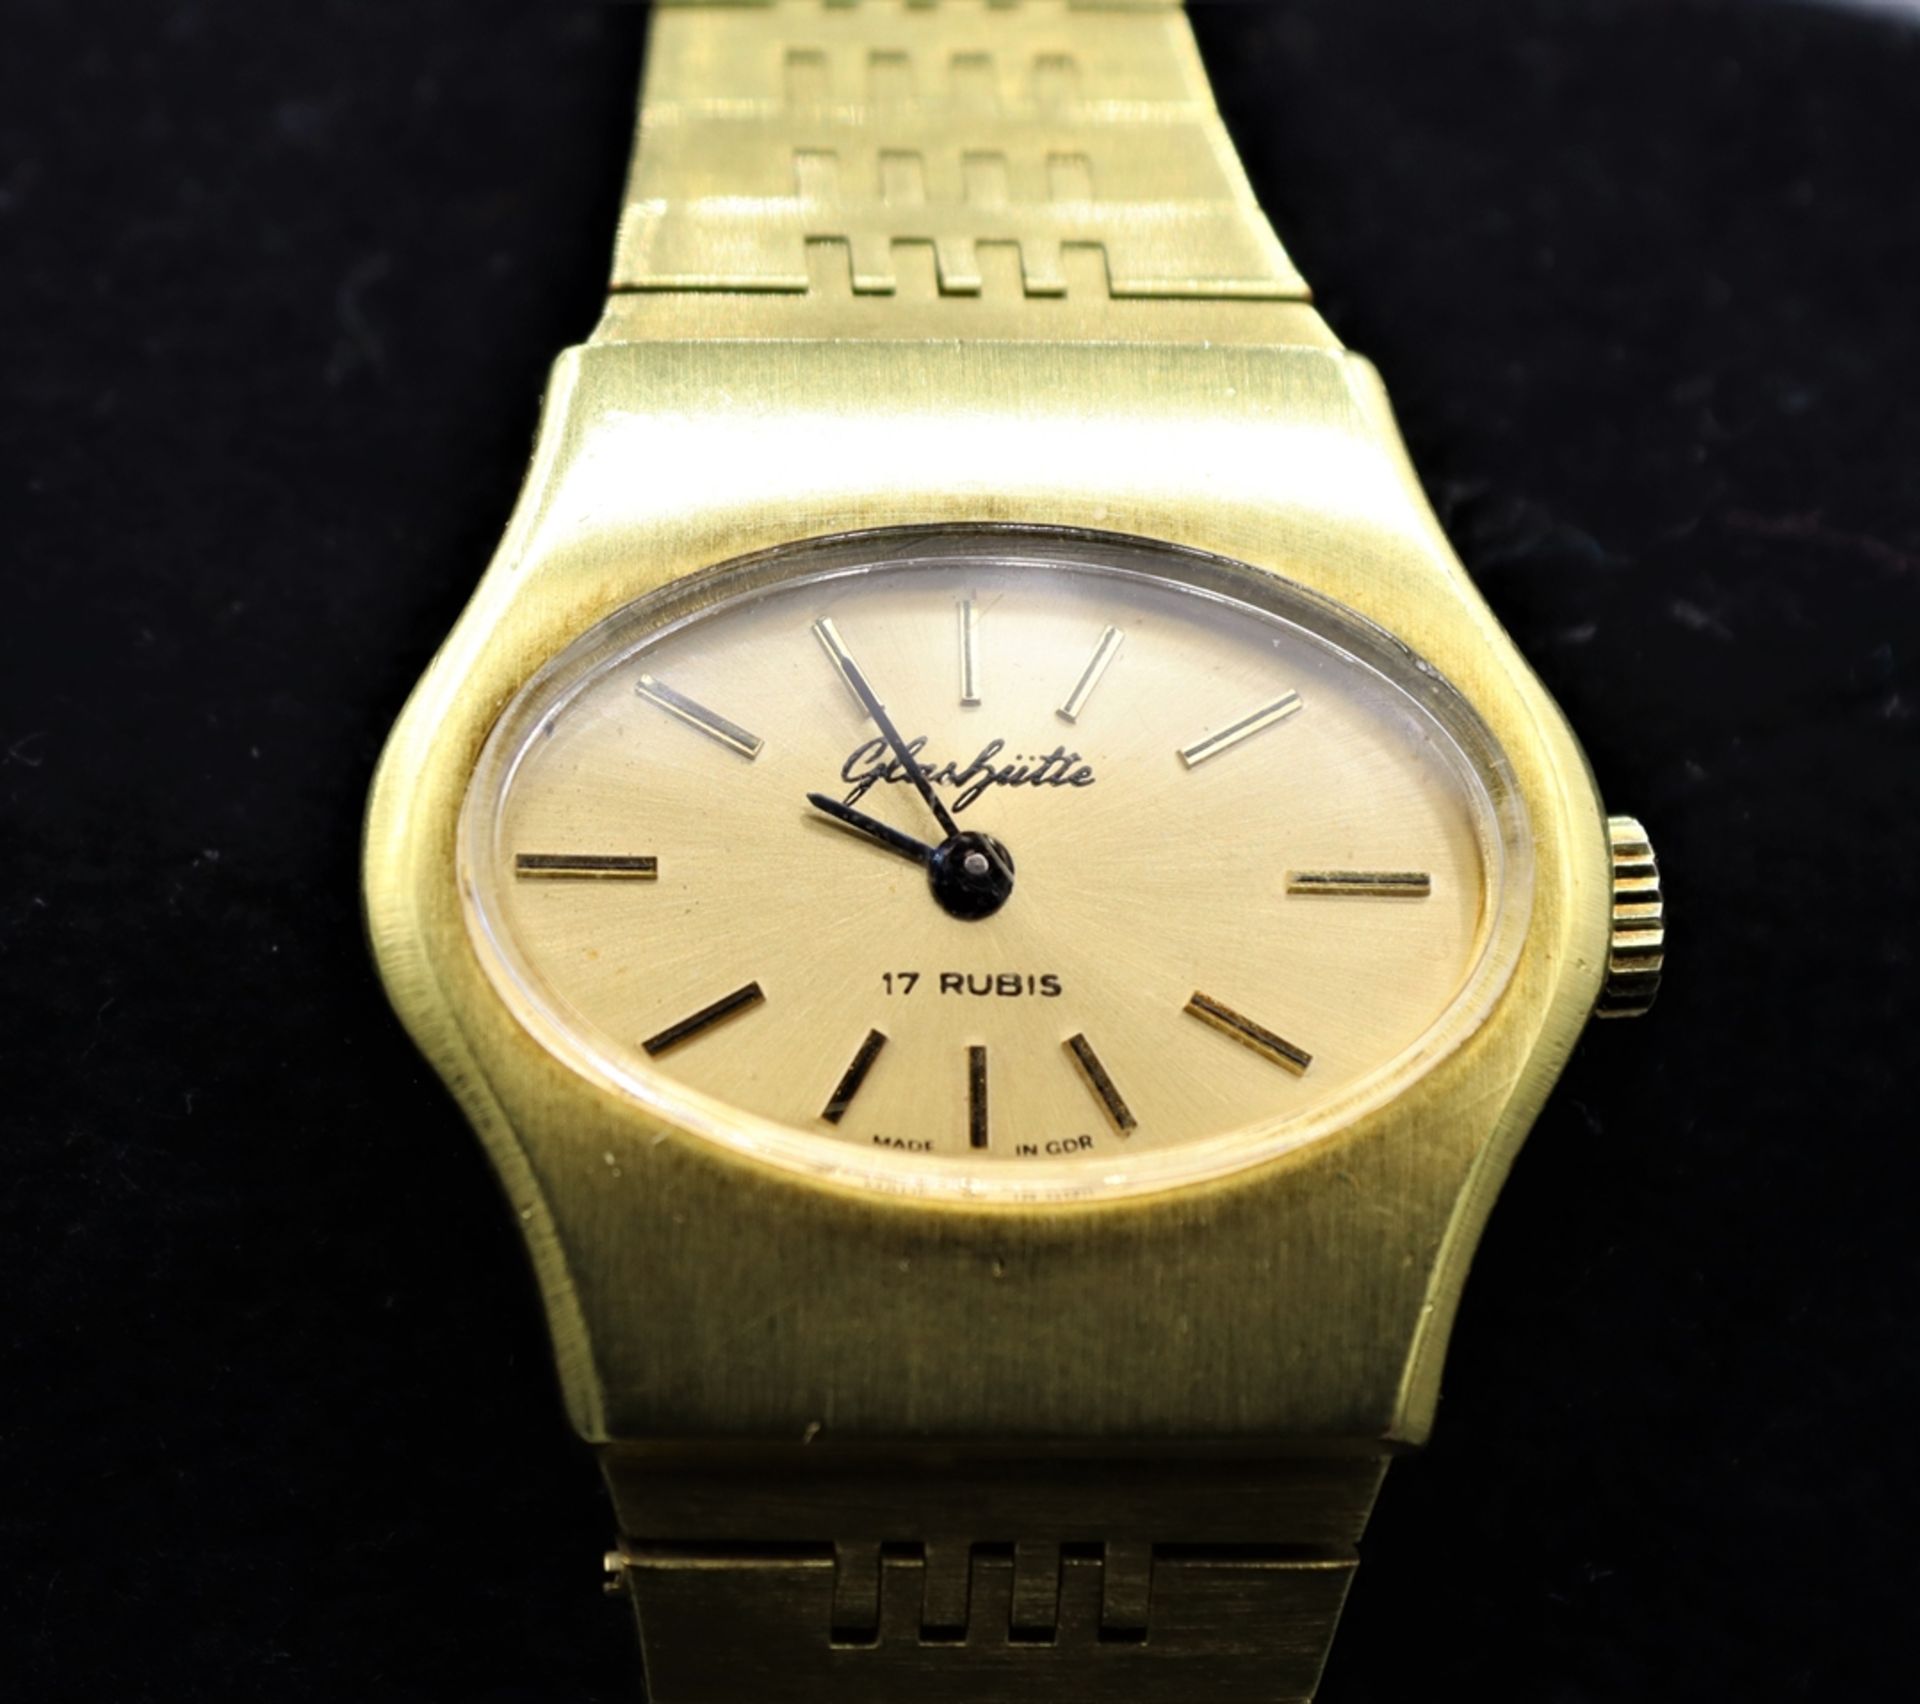 Damen Armbanduhr Gold Double, Marke Glashütte 70er Jahre, gelagert mit 17 Rubis (Rubine), umlaufend - Bild 2 aus 2